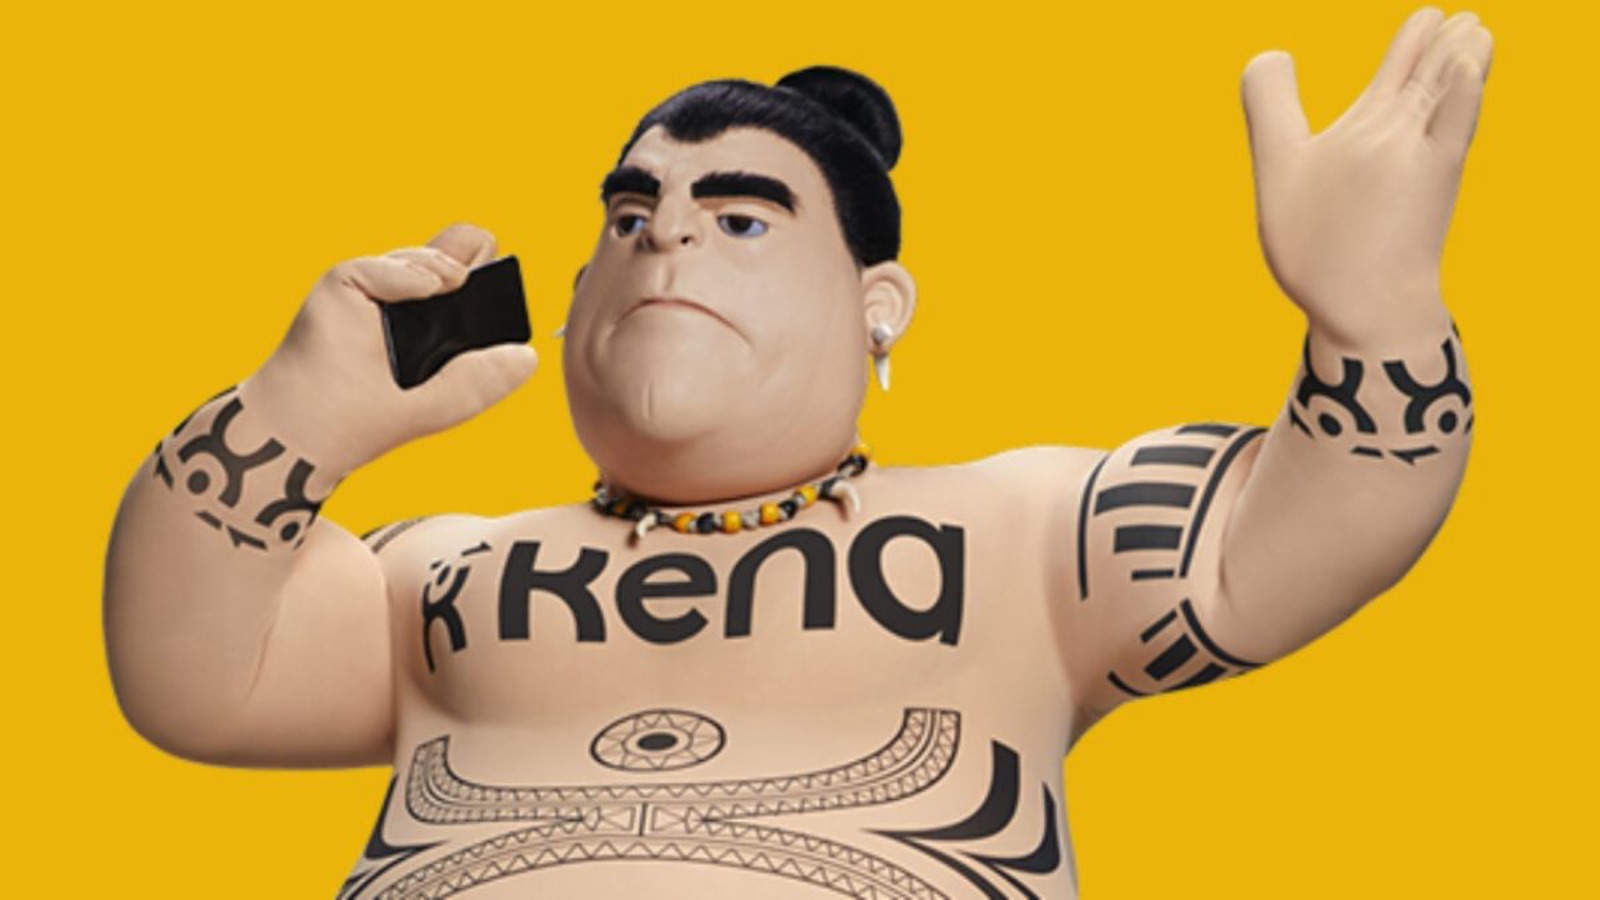 Kena Mobile offre la Promo TOP con 100 GB a soli 5 EURO